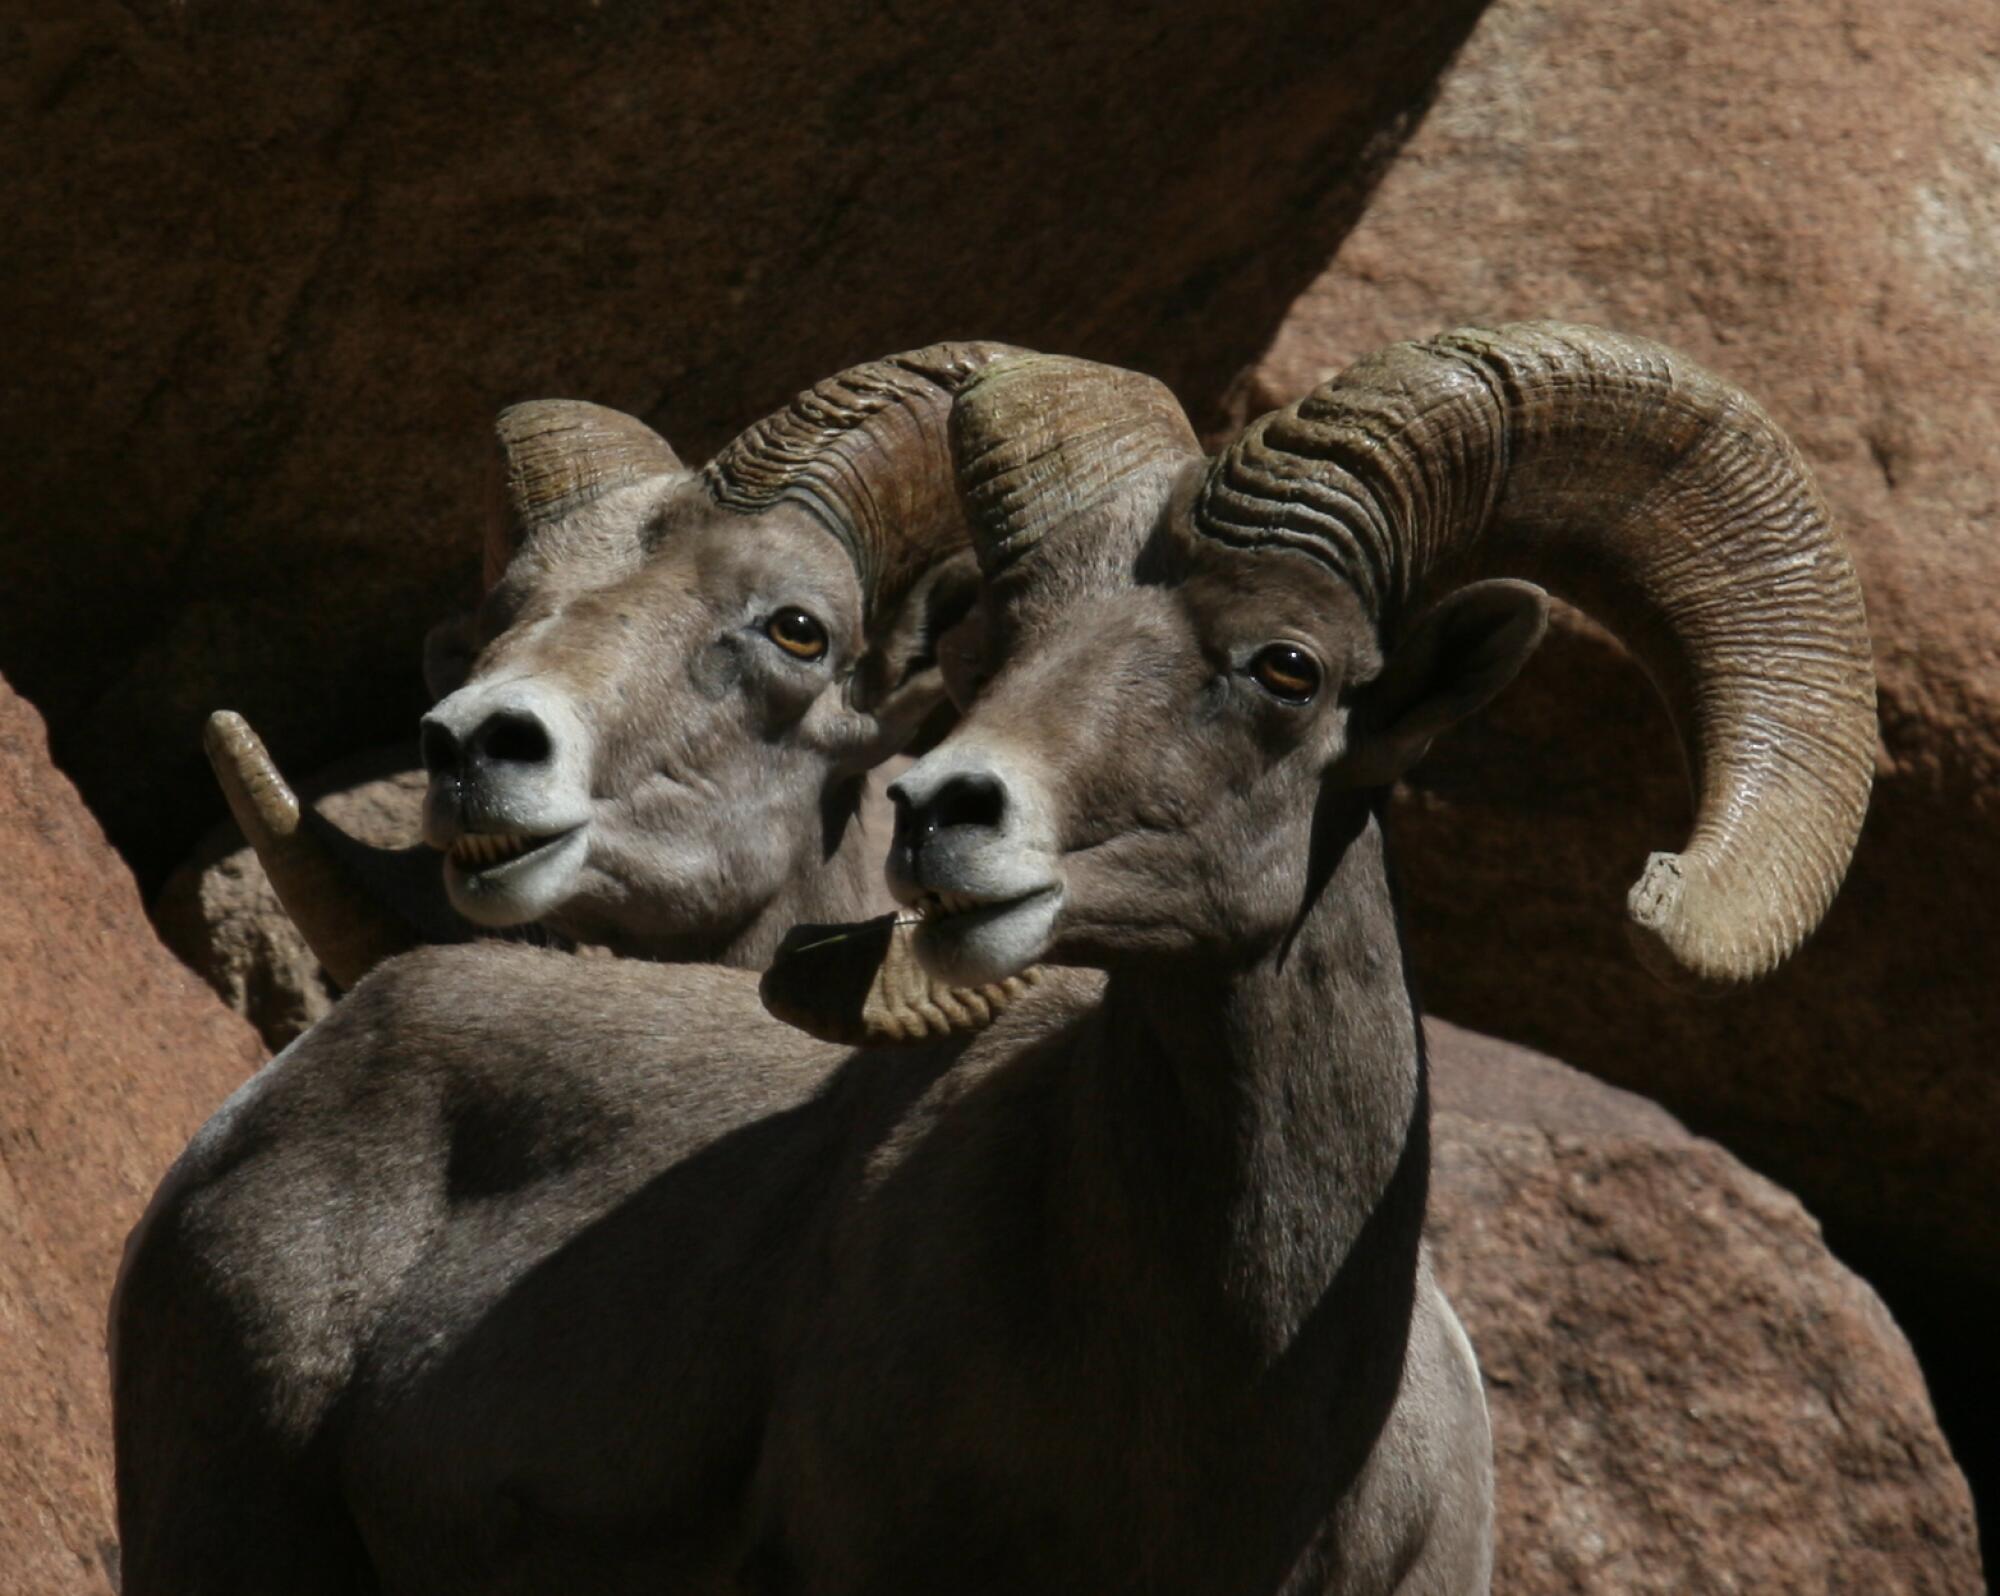 A pair of bighorn sheep.